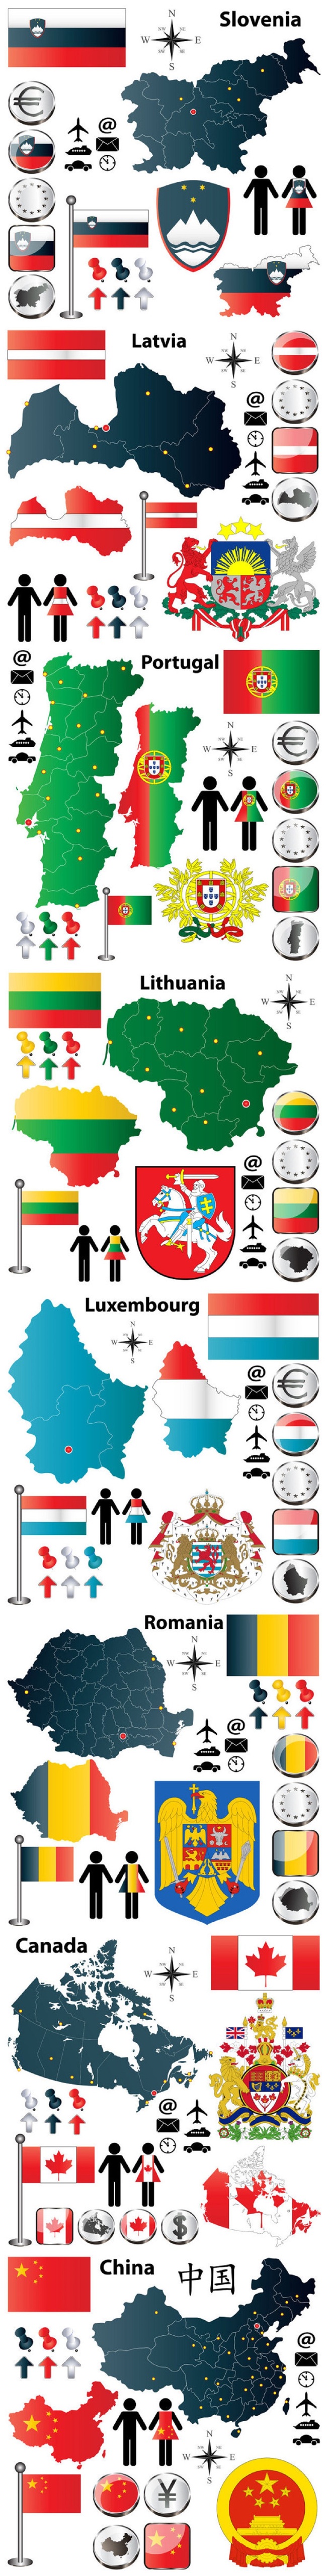 国家地图国旗国徽元素icon图标矢量素材图片